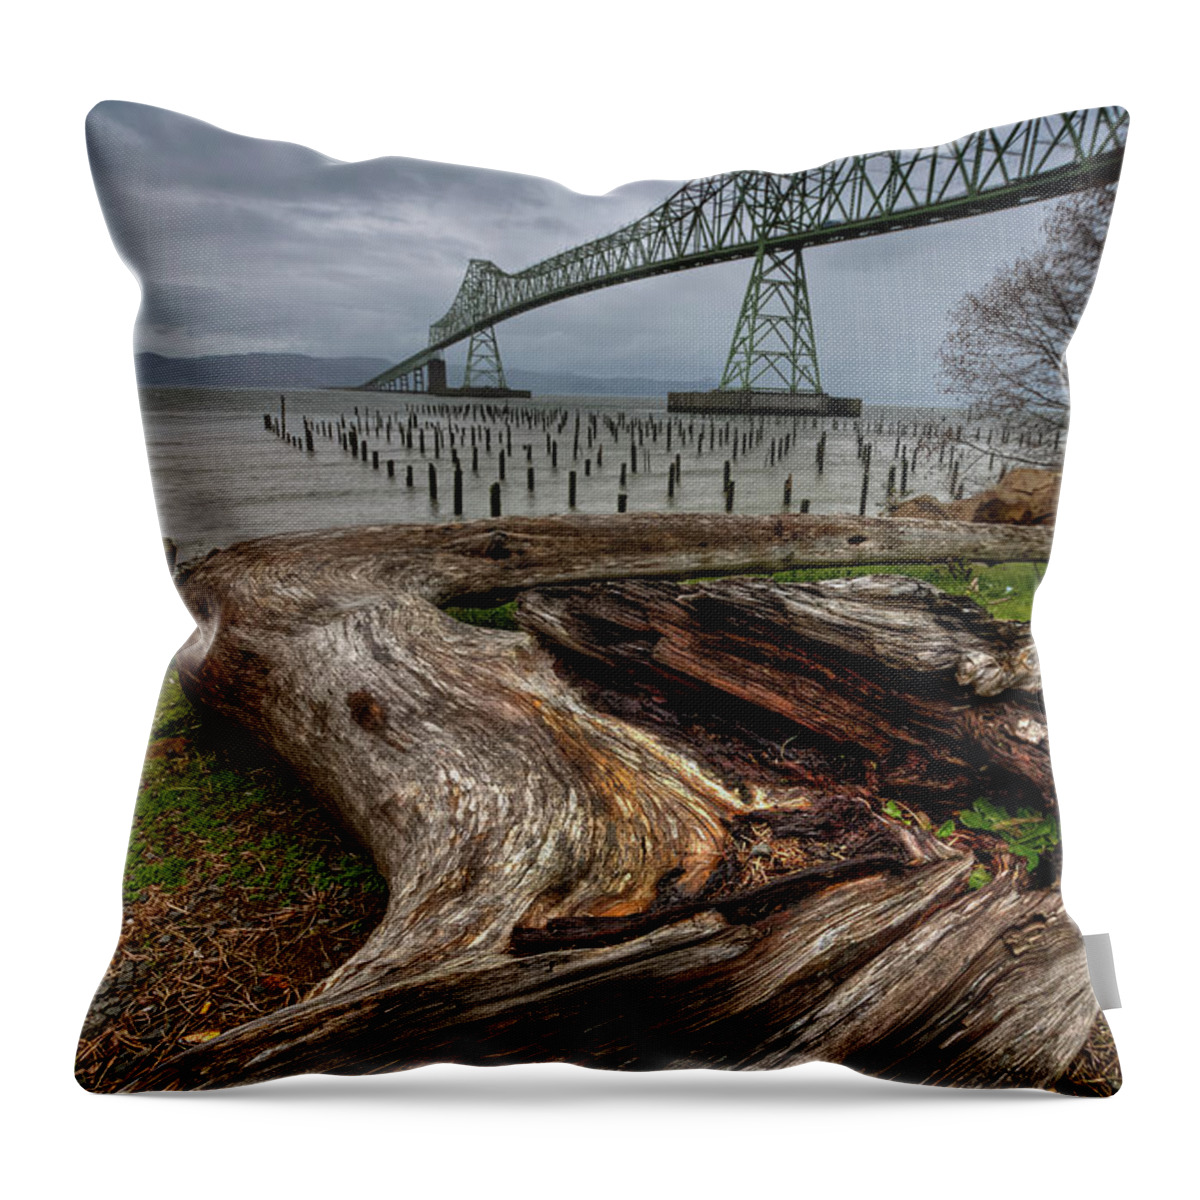 Cantilever Bridge Throw Pillow featuring the photograph Astoria Megler Bridge by Ramin Nabipour